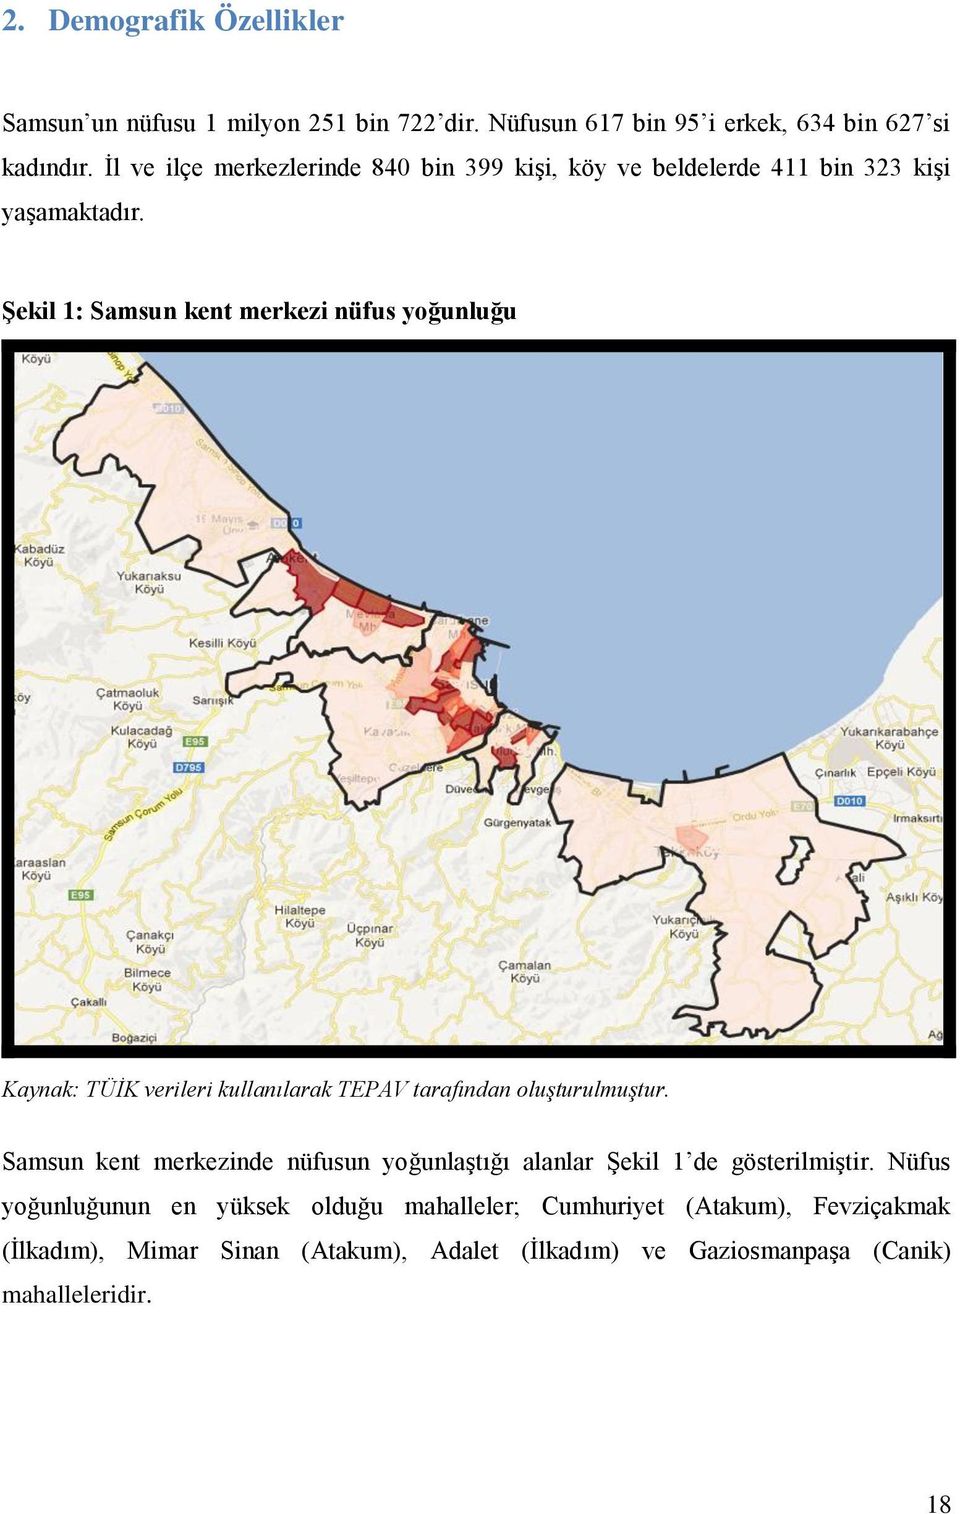 Şekil 1: Samsun kent merkezi nüfus yoğunluğu Kaynak: TÜİK verileri kullanılarak TEPAV tarafından oluşturulmuştur.